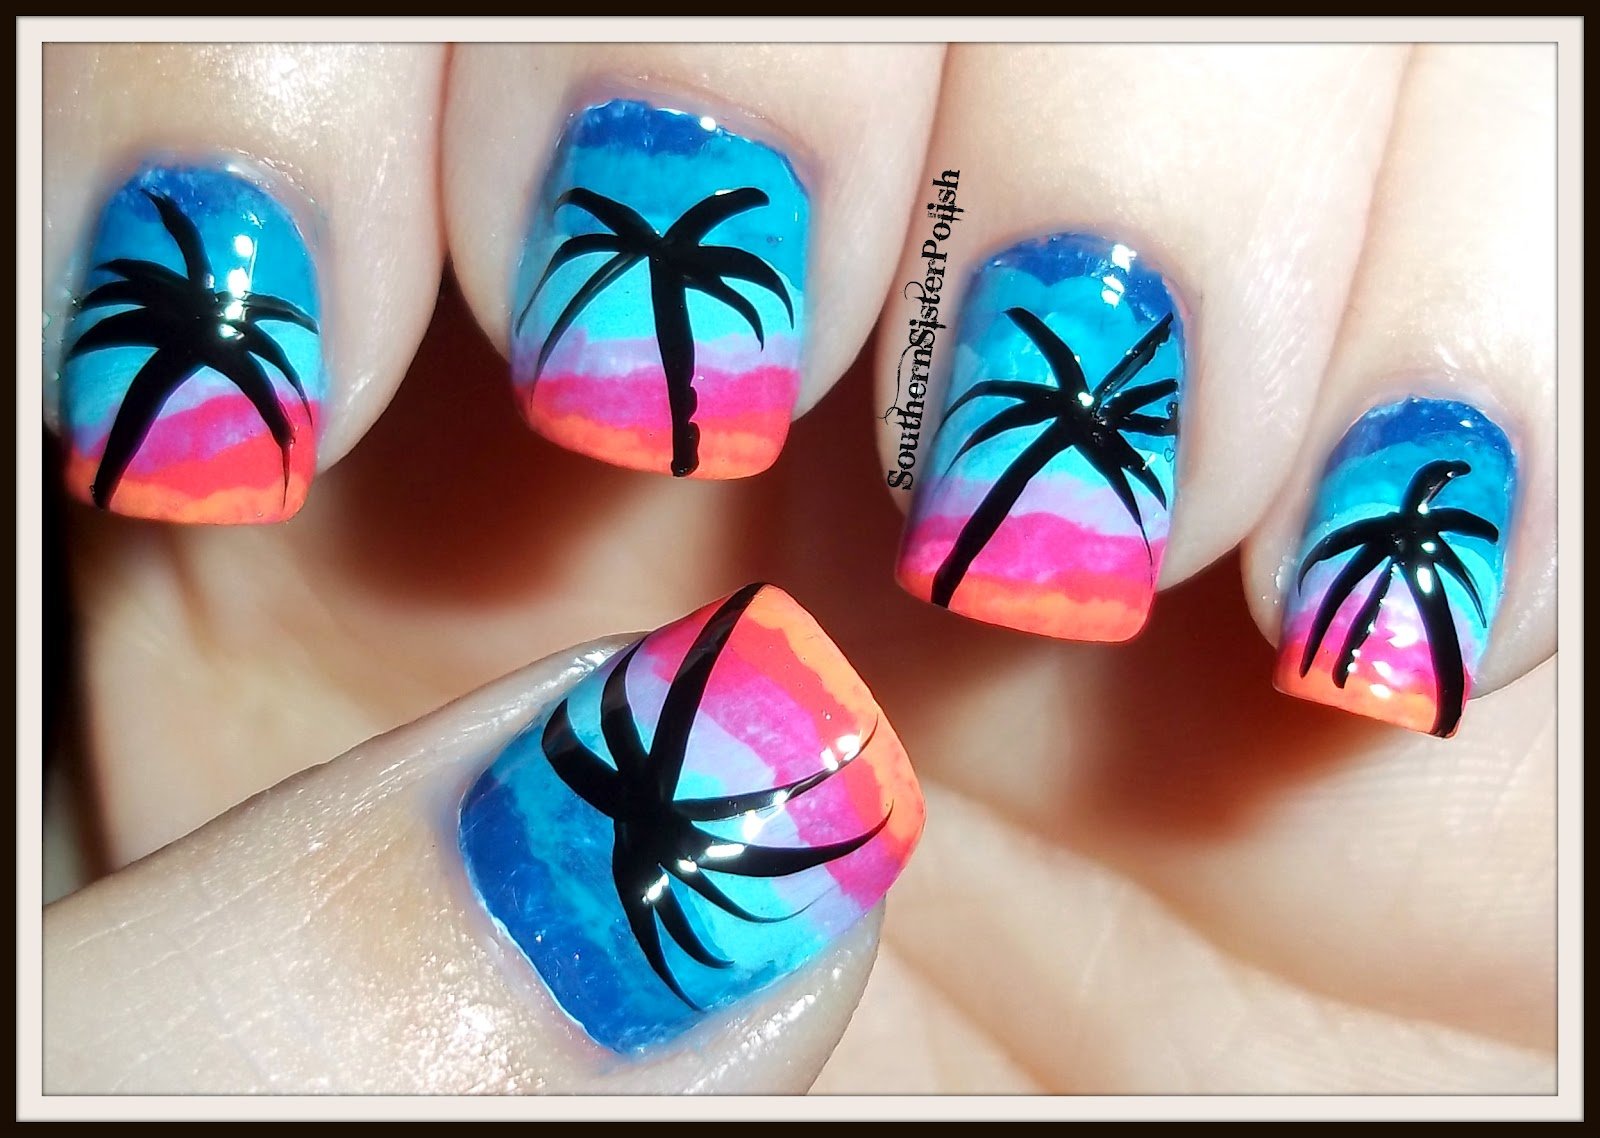 1. "Beachy Summer Nail Designs" - wide 5